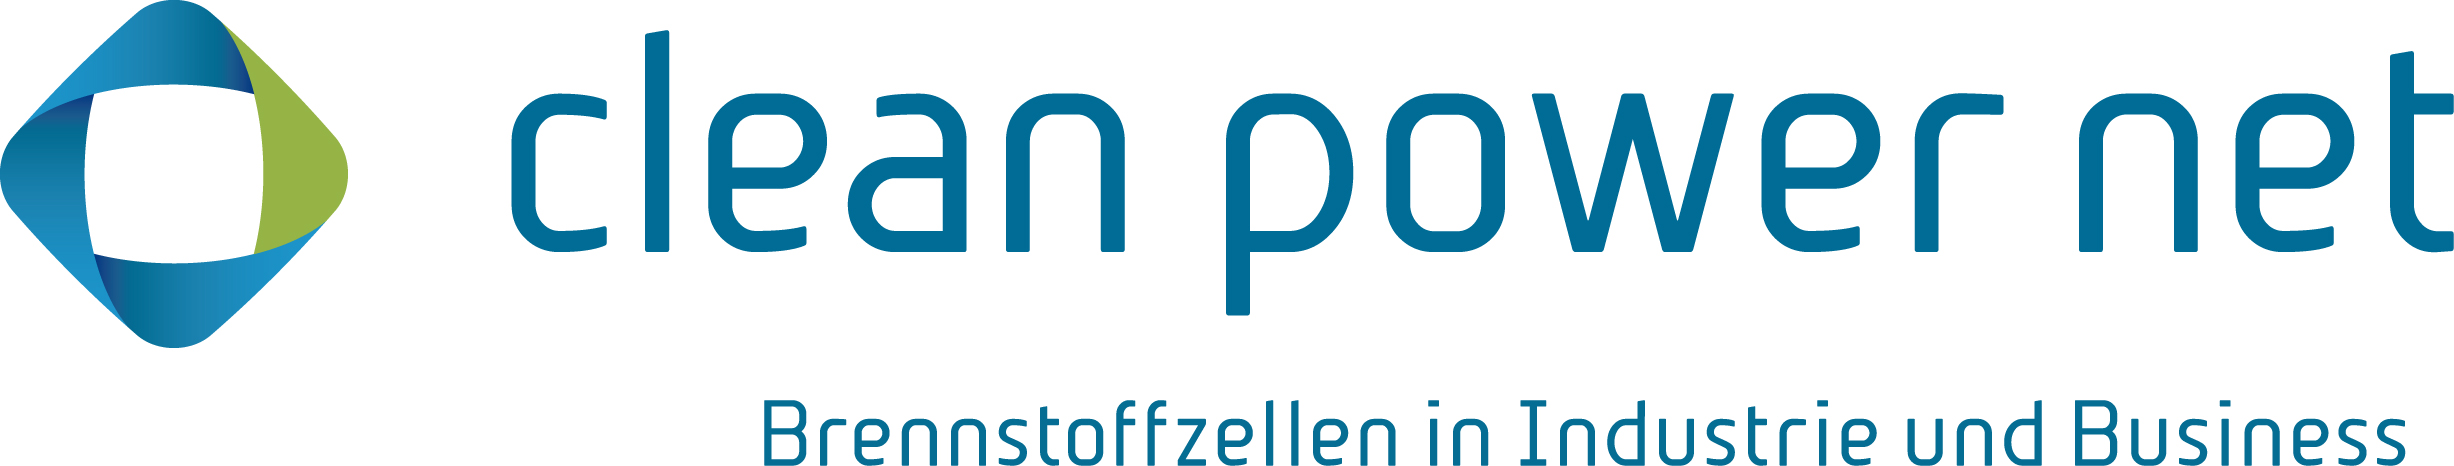 CPN-logo